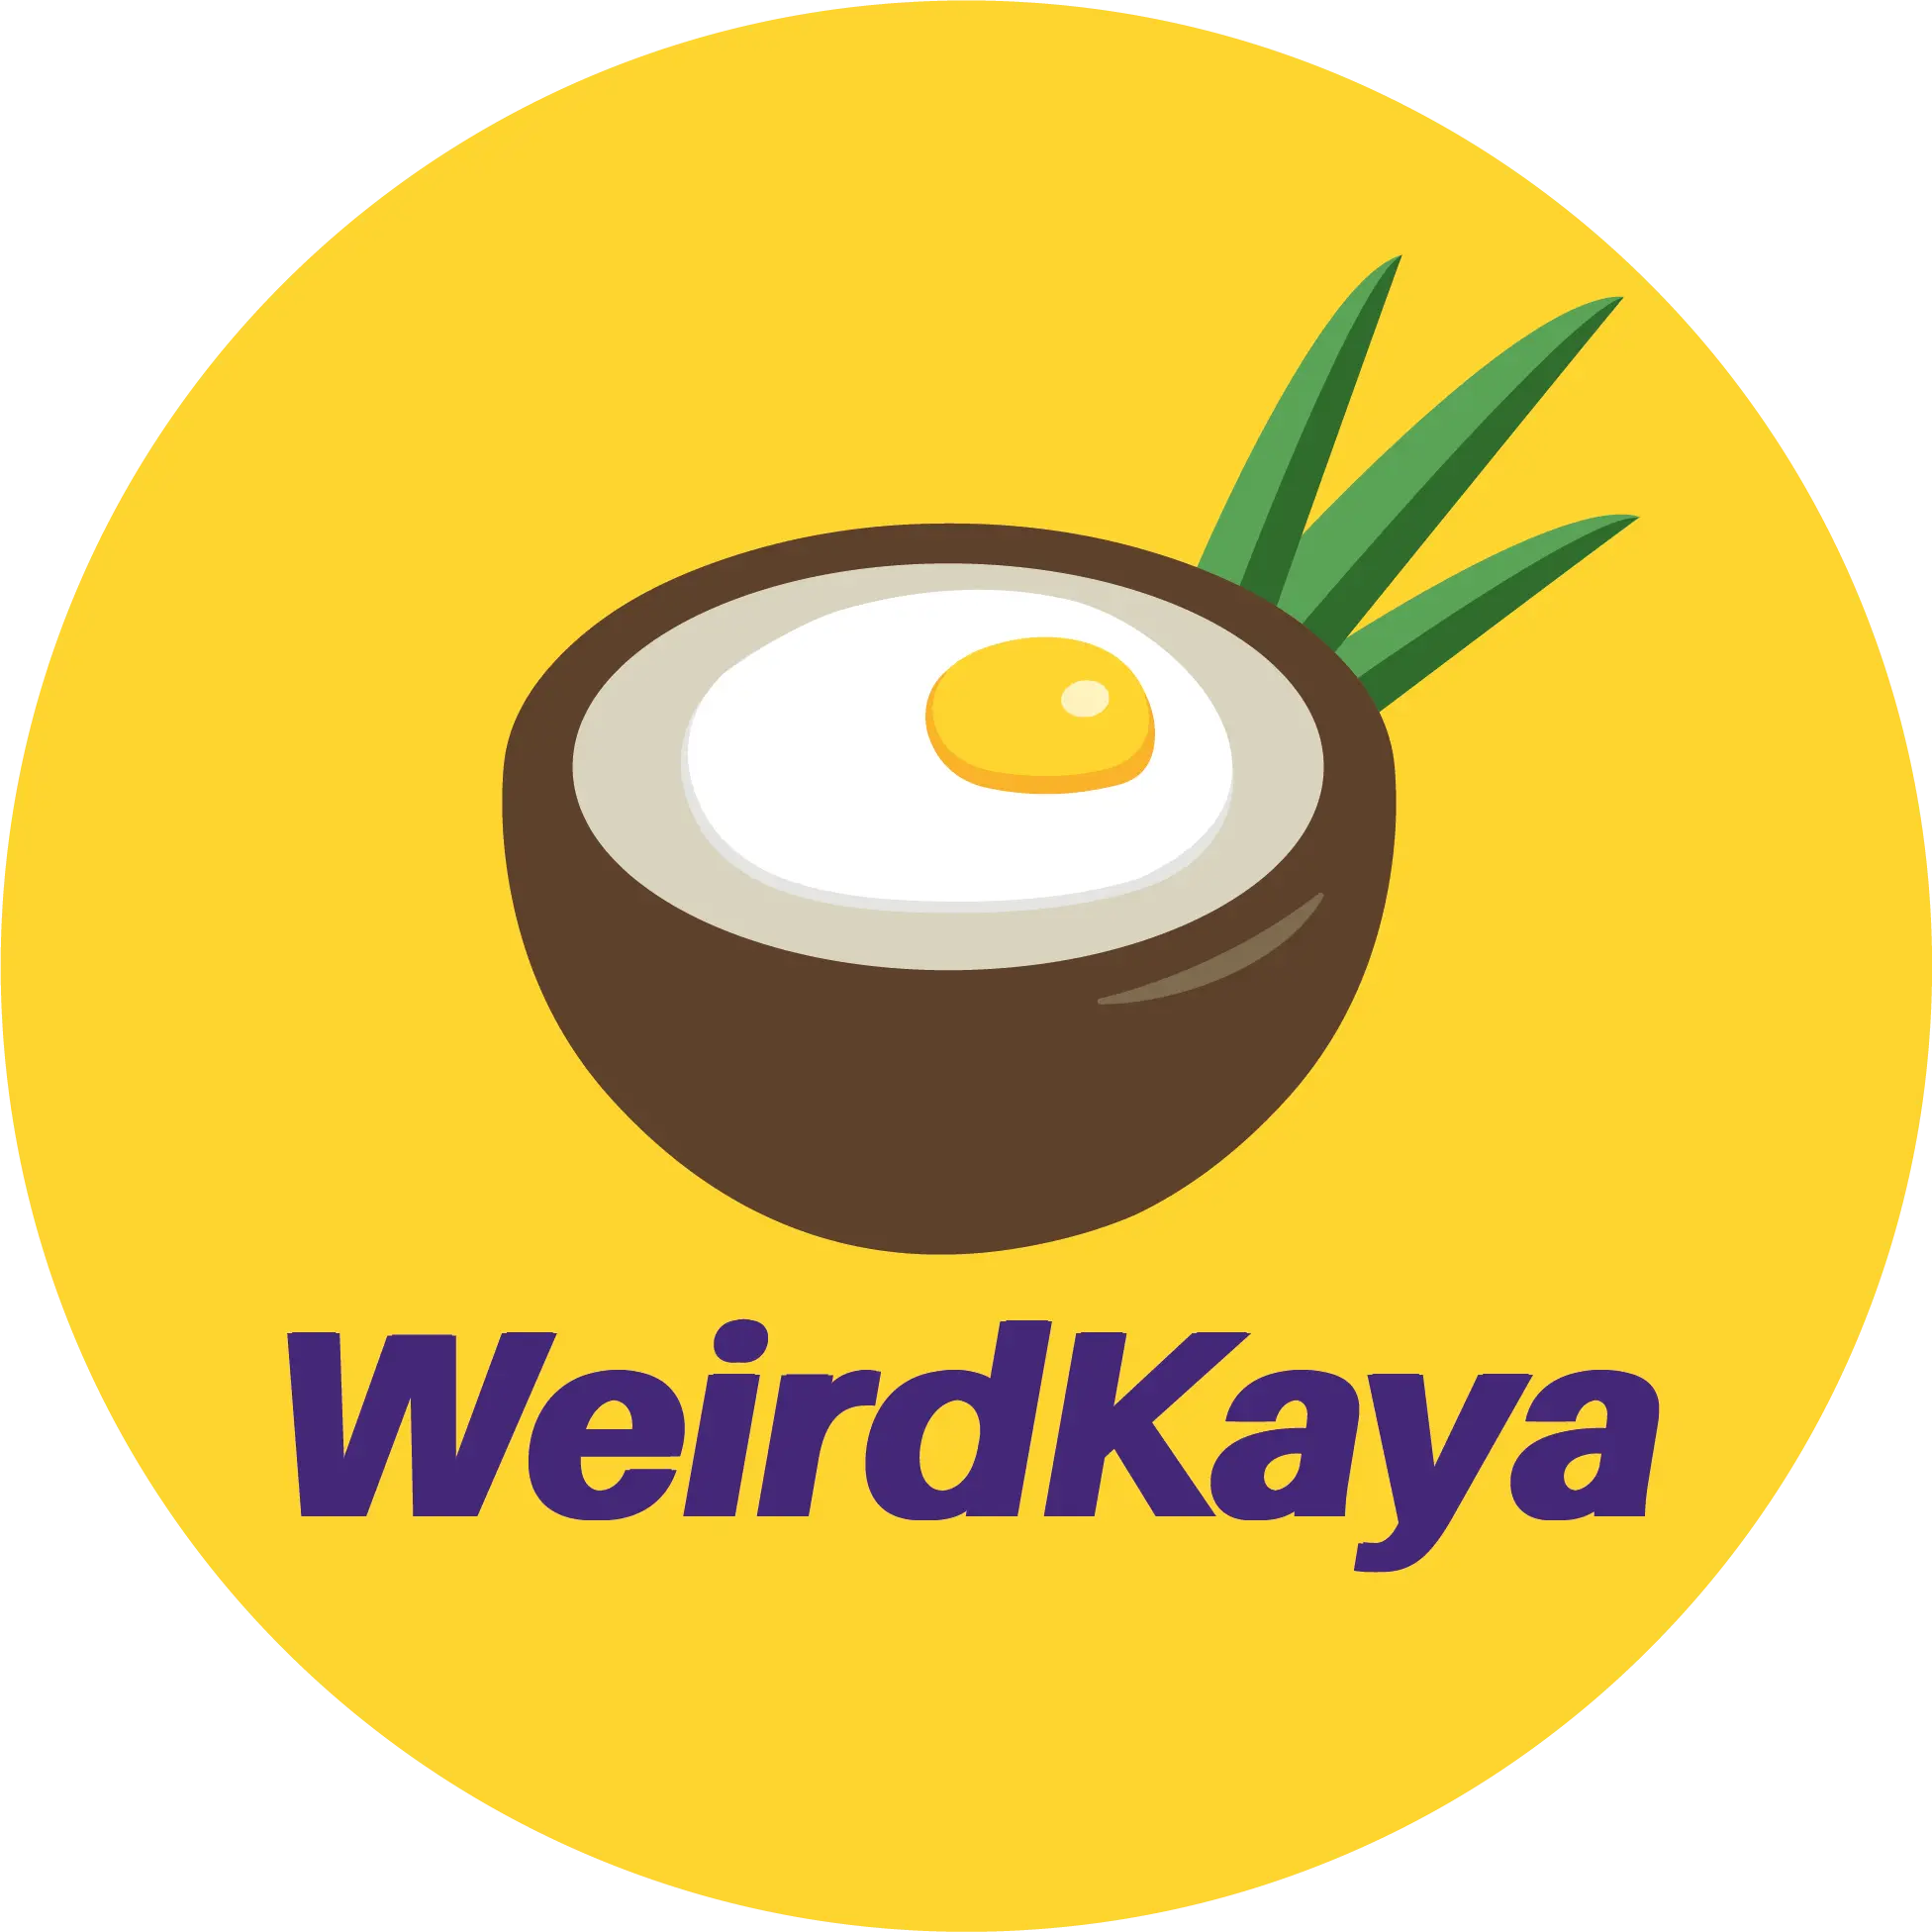 Weirdkaya-logo-circle